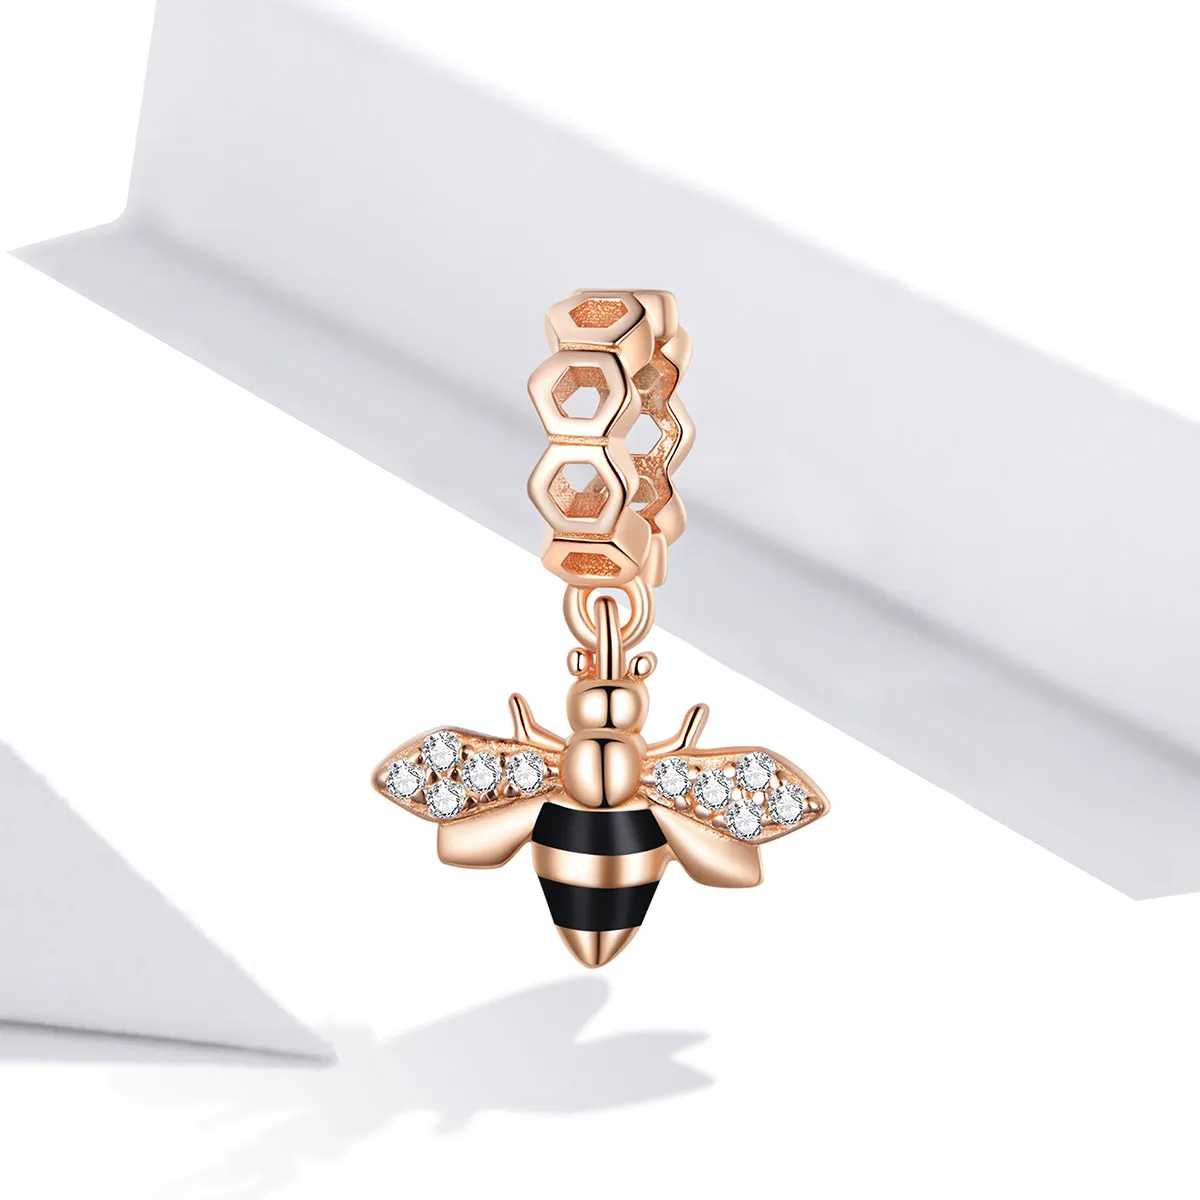 Talisman pandantiv Tip Pandora cu Mica albina din aur rose - BSC370